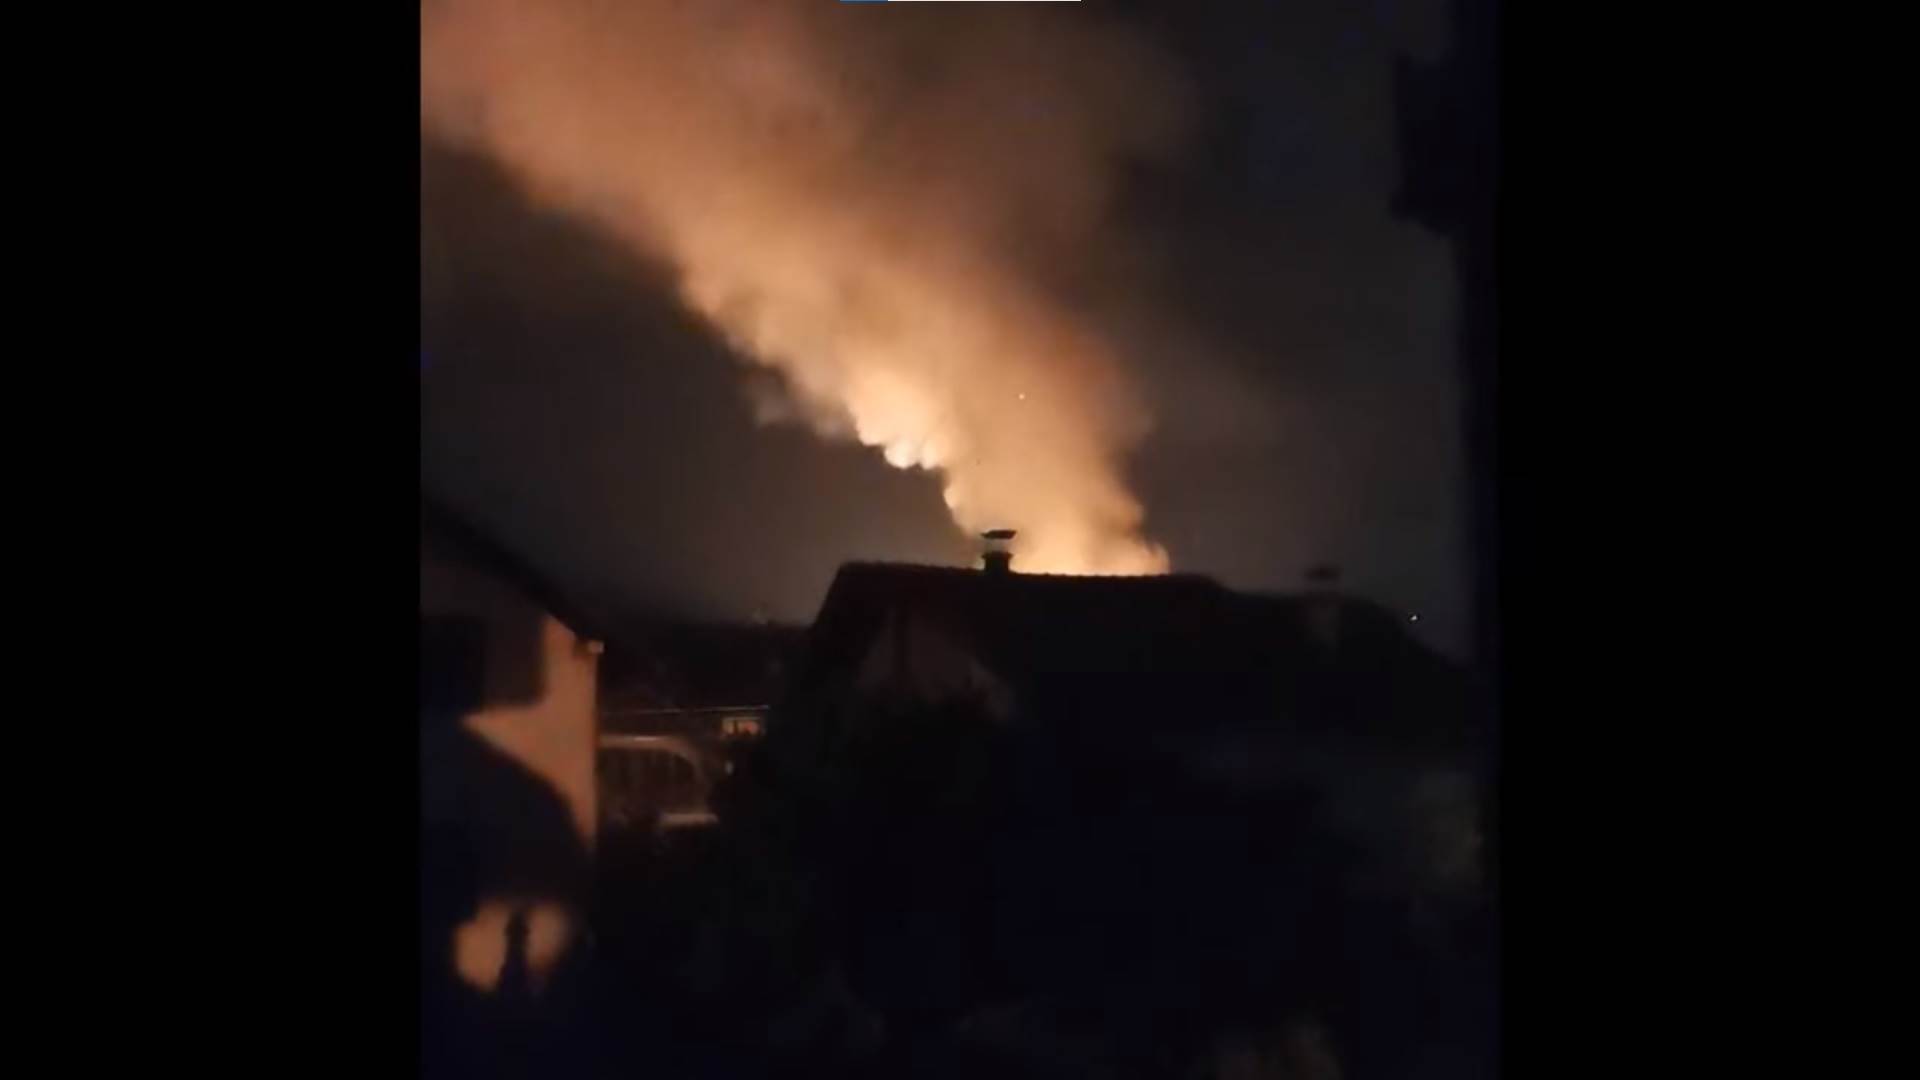  Niz eksplozija u fabrici "Sloboda" u Čačku 